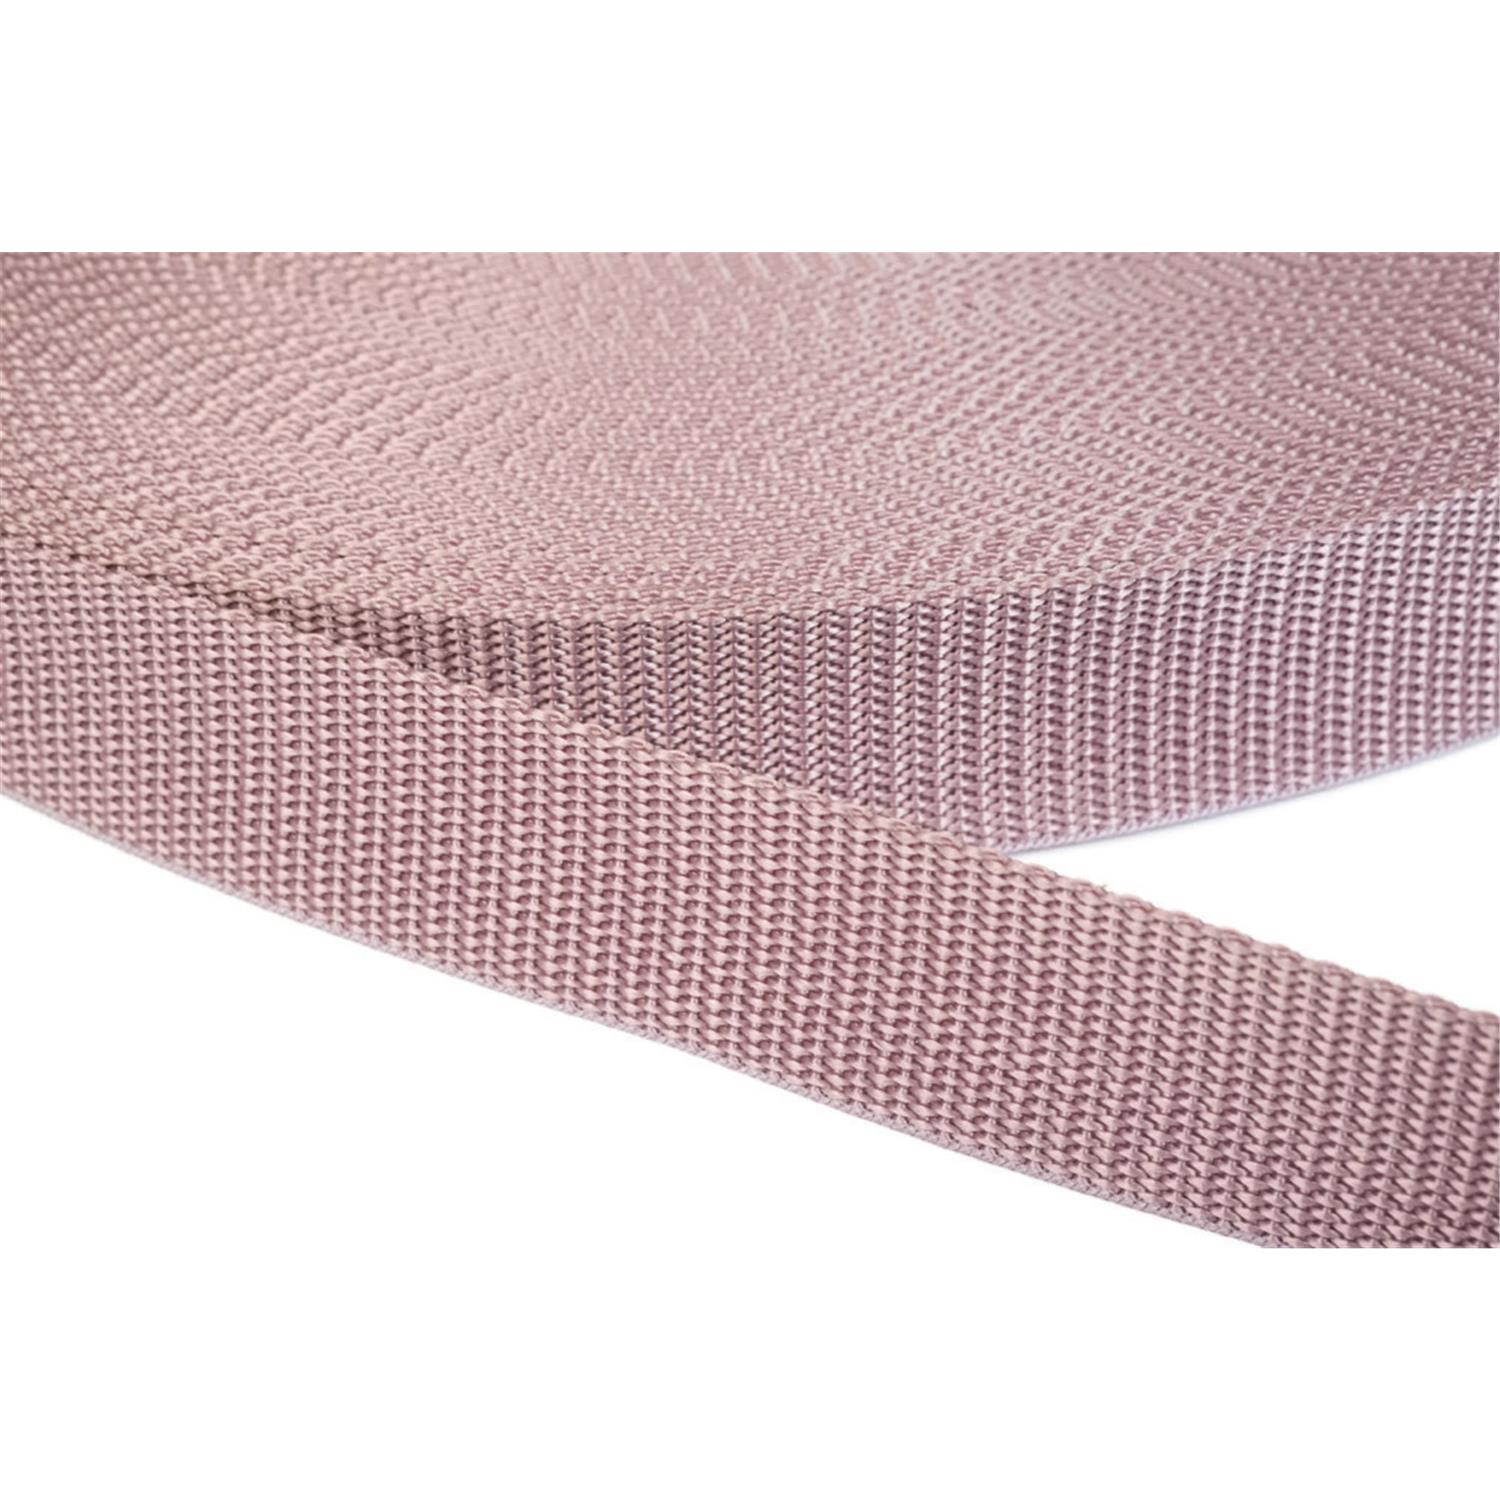 Gurtband 20mm breit aus Polypropylen in 41 Farben 15 - altrosa 06 Meter